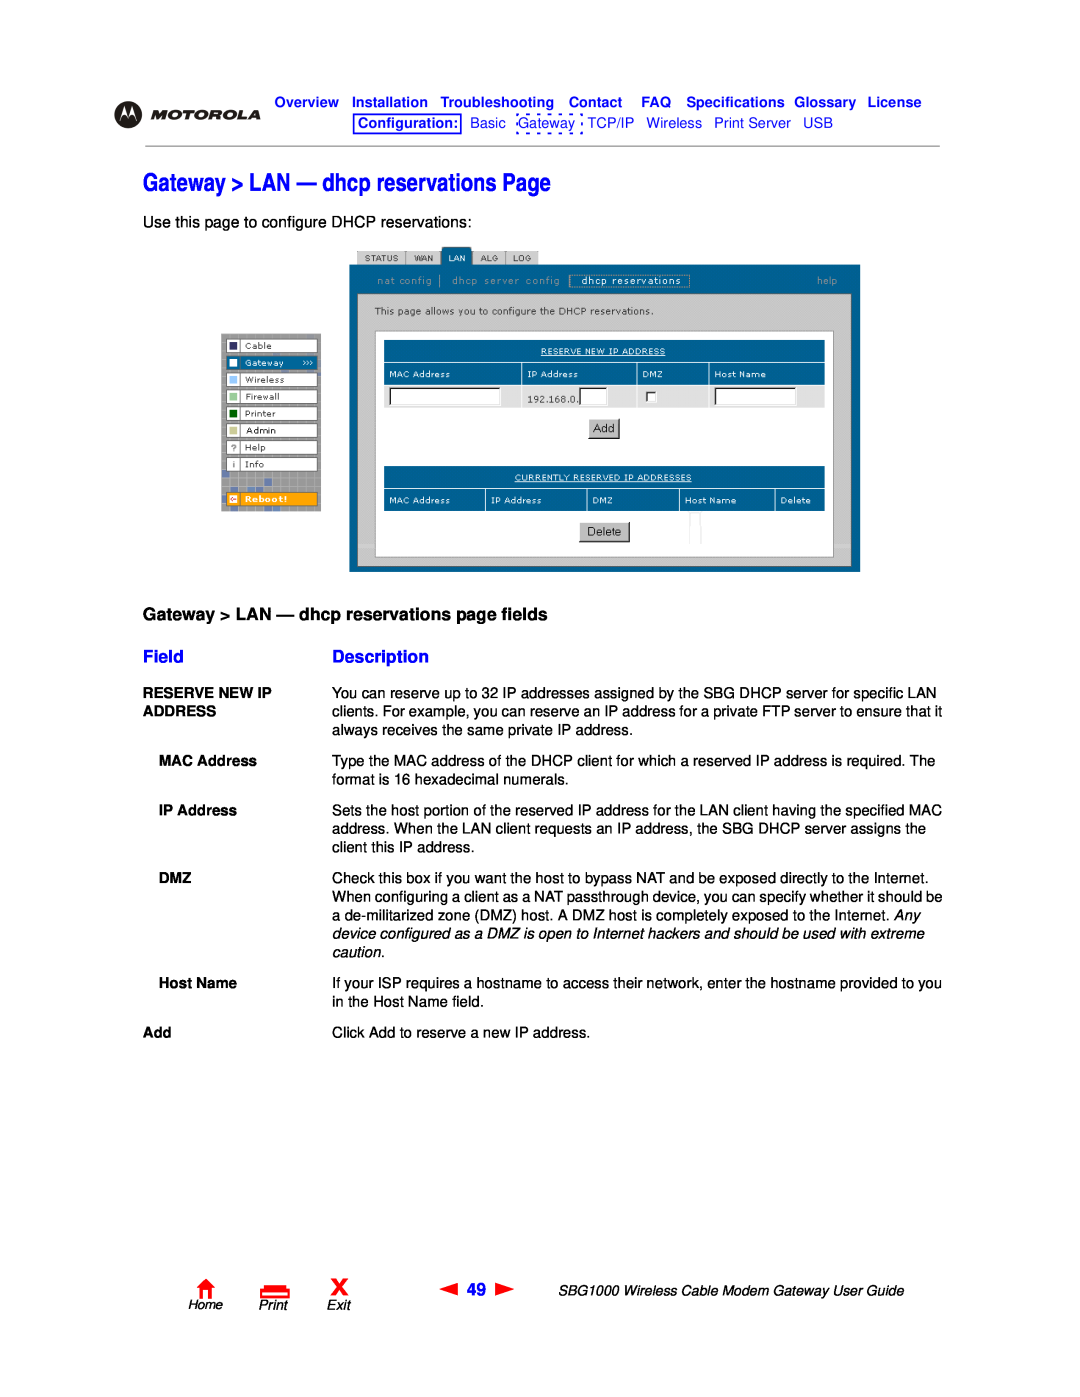 Motorola SBG1000 Gateway LAN - dhcp reservations Page, Gateway LAN - dhcp reservations page fields, Field, Description 